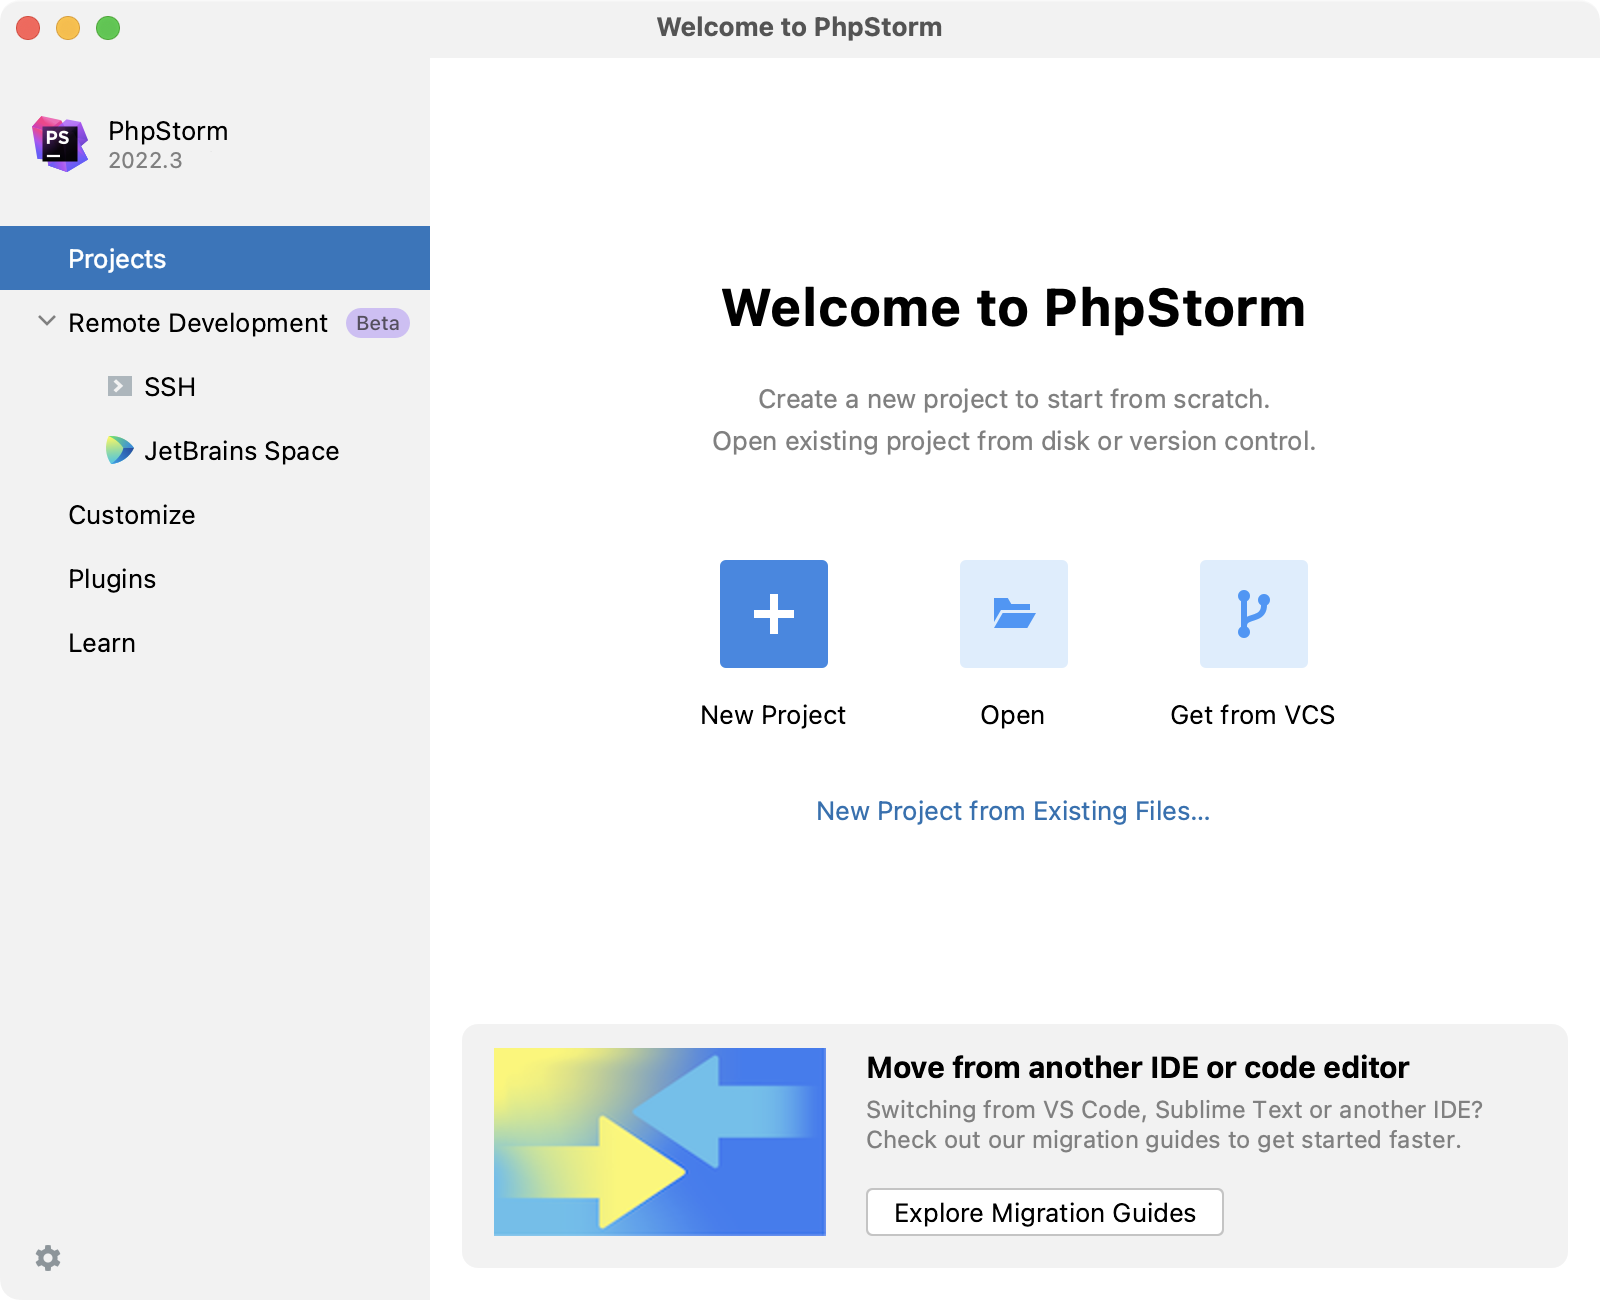 PhpStorm Welcome Screen